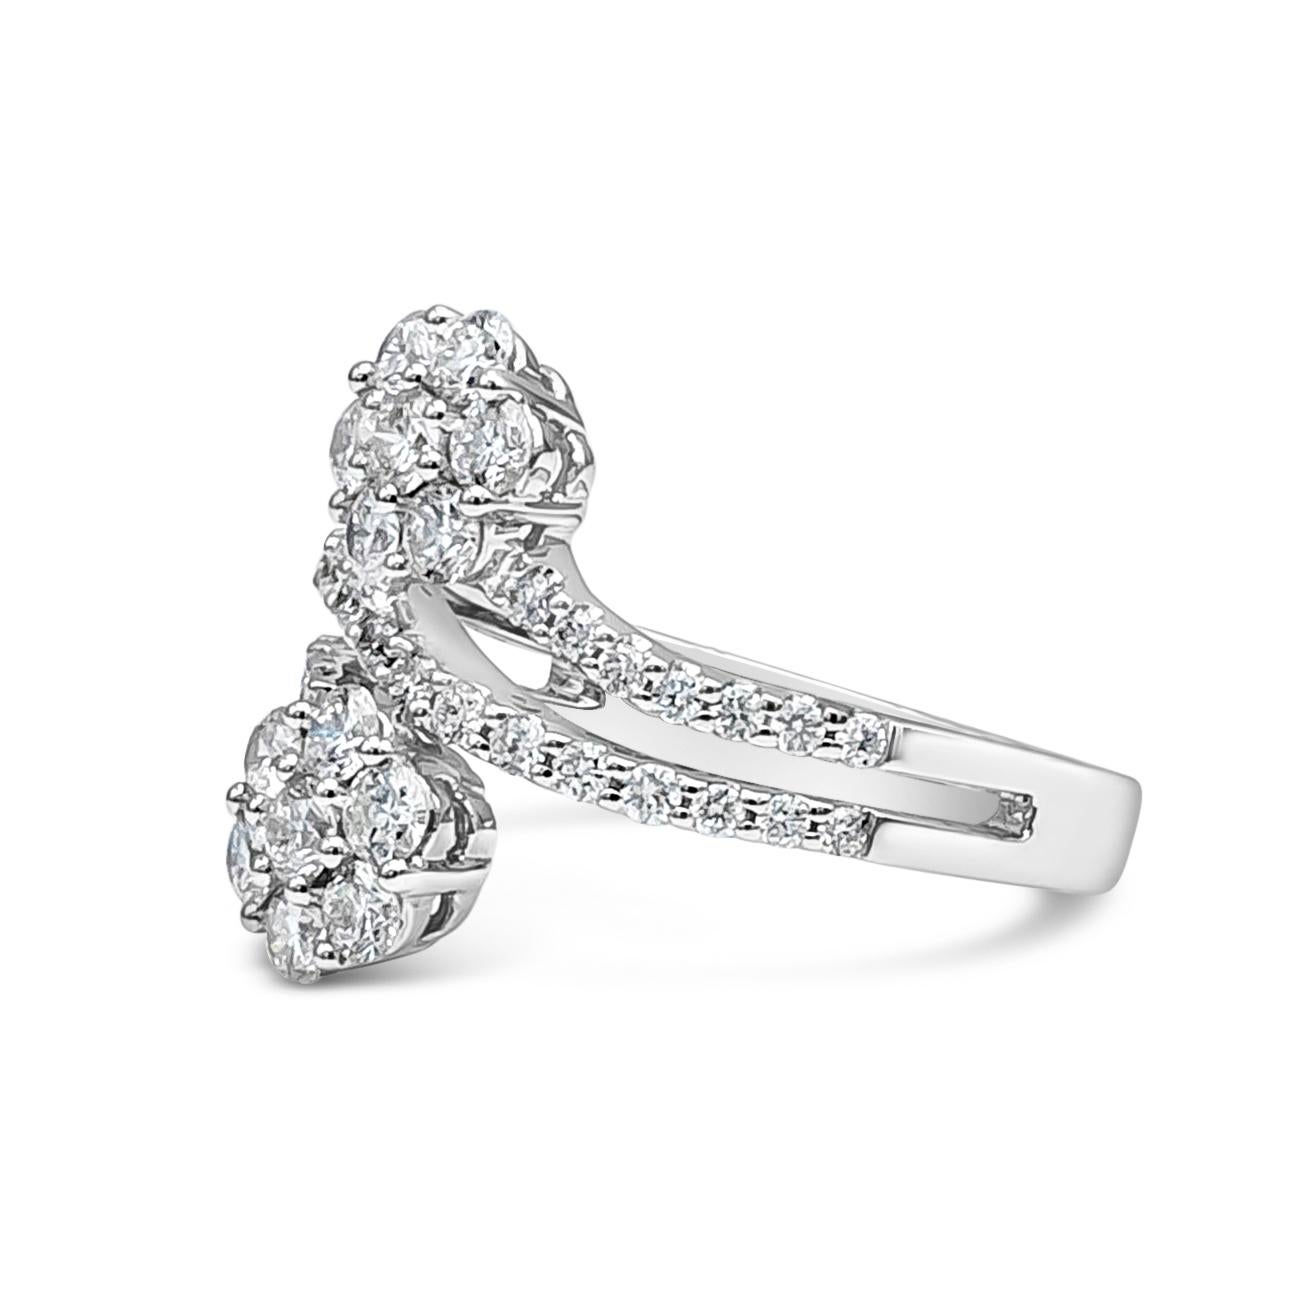 Diese luxuriöse und unglaublich prächtige  doppelte Blume Mode Ring präsentiert 1,20 Karat insgesamt 44 Stücke von brillanten runden Diamanten, F-G Farbe und VS-SI in Klarheit. Jede schöne Blume ist mit 7 runden Brillanten besetzt und der sich